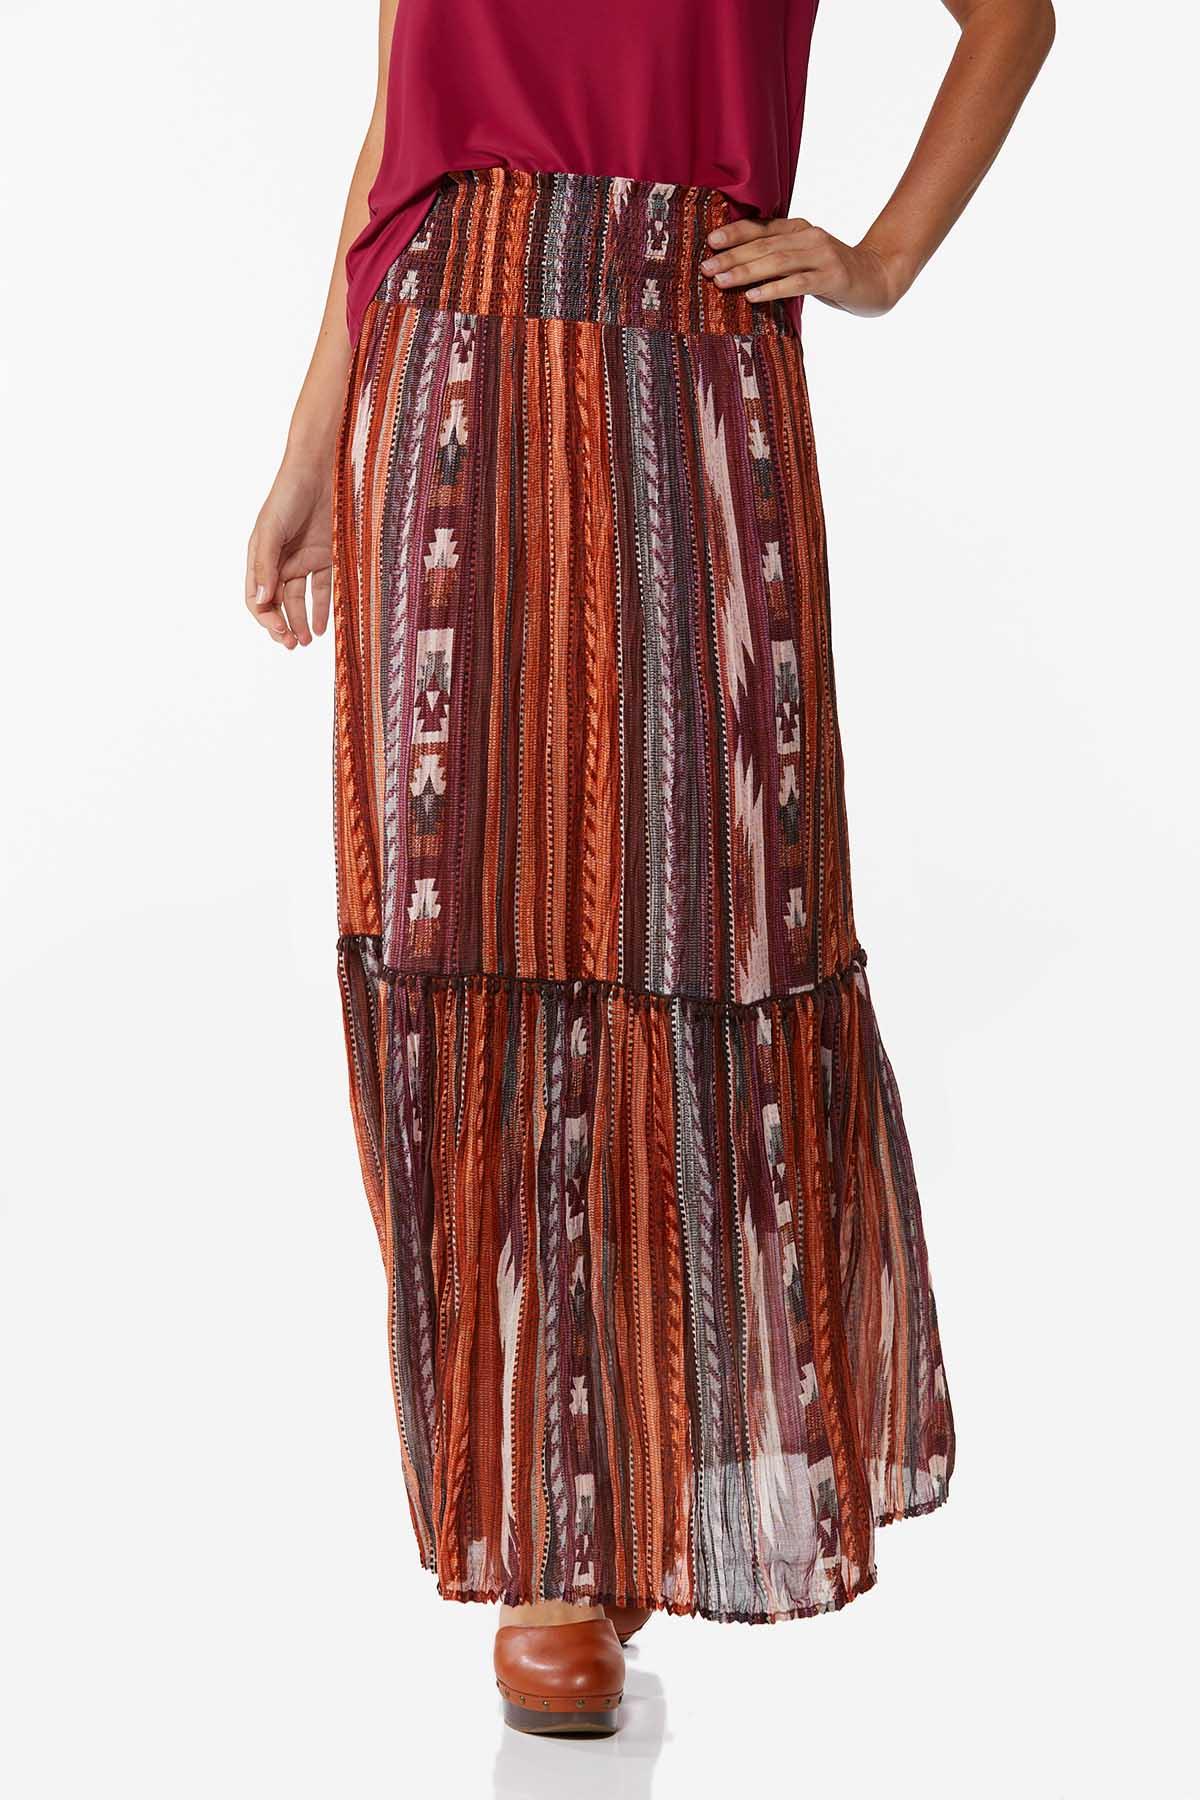 Aztec Maxi Skirt